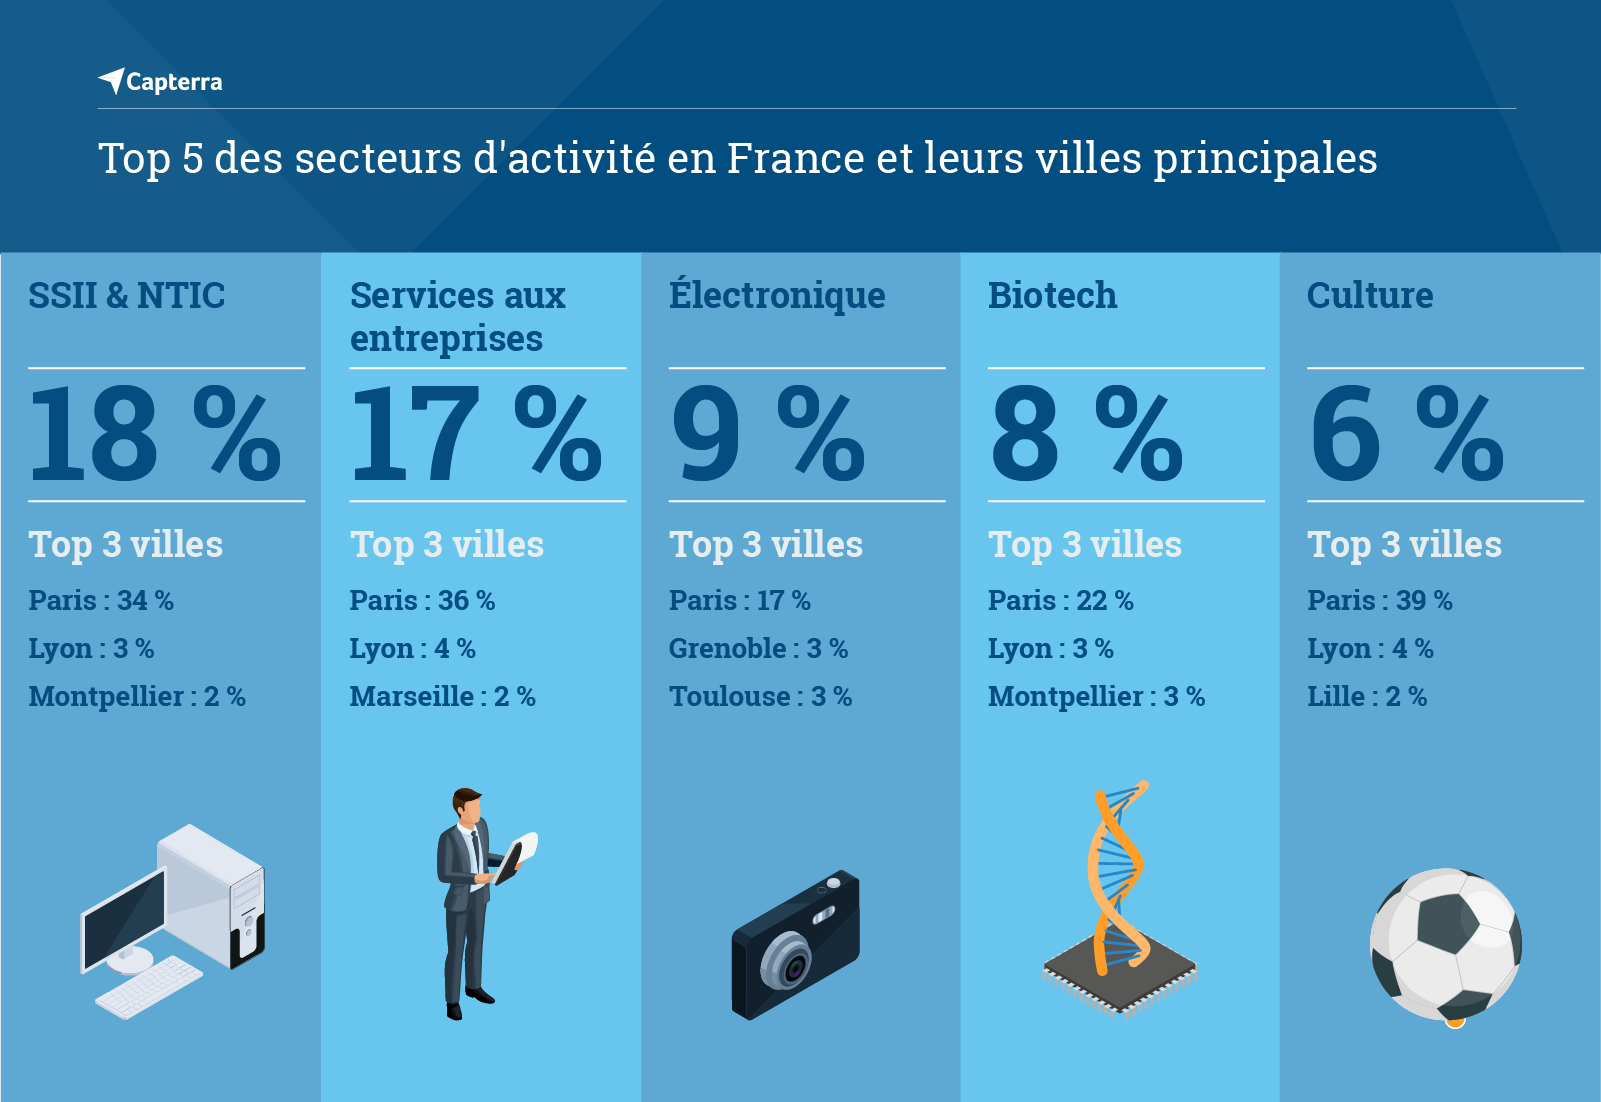 Top 5 des secteurs d'activité en France et leurs villes principales